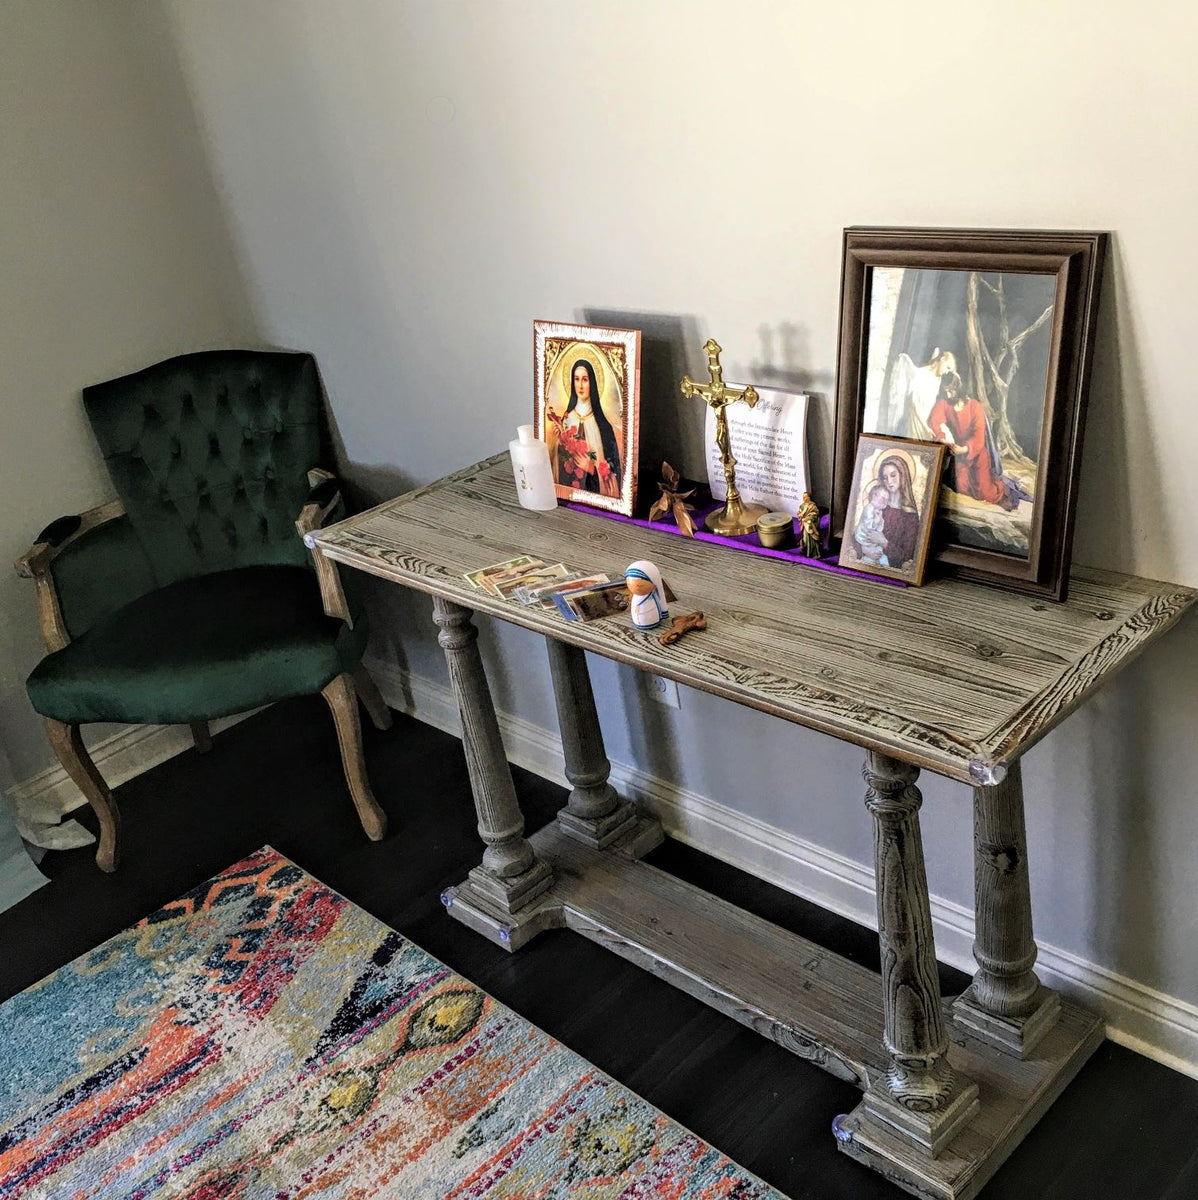 catholic home altar ideas